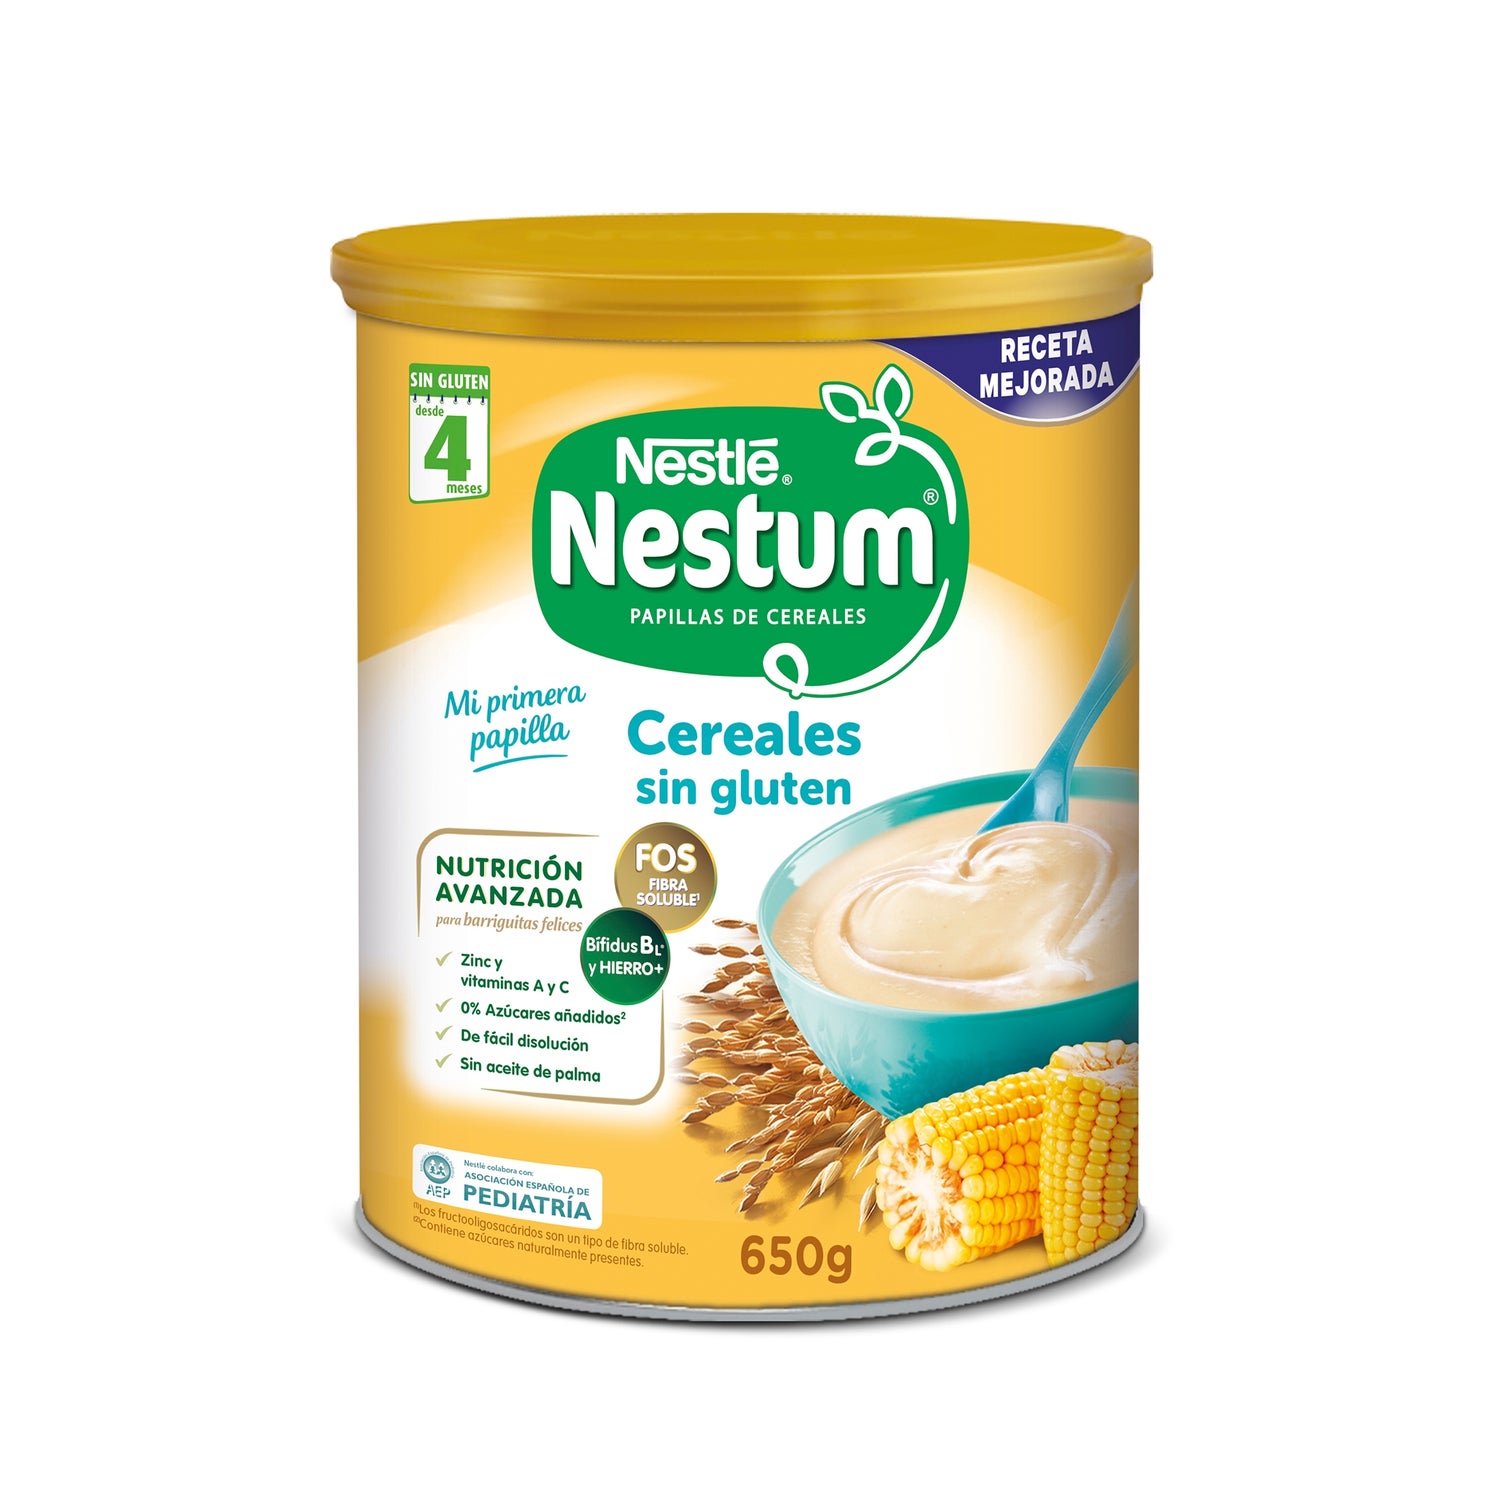 Lista de cereales para el bebé, sin gluten y con gluten